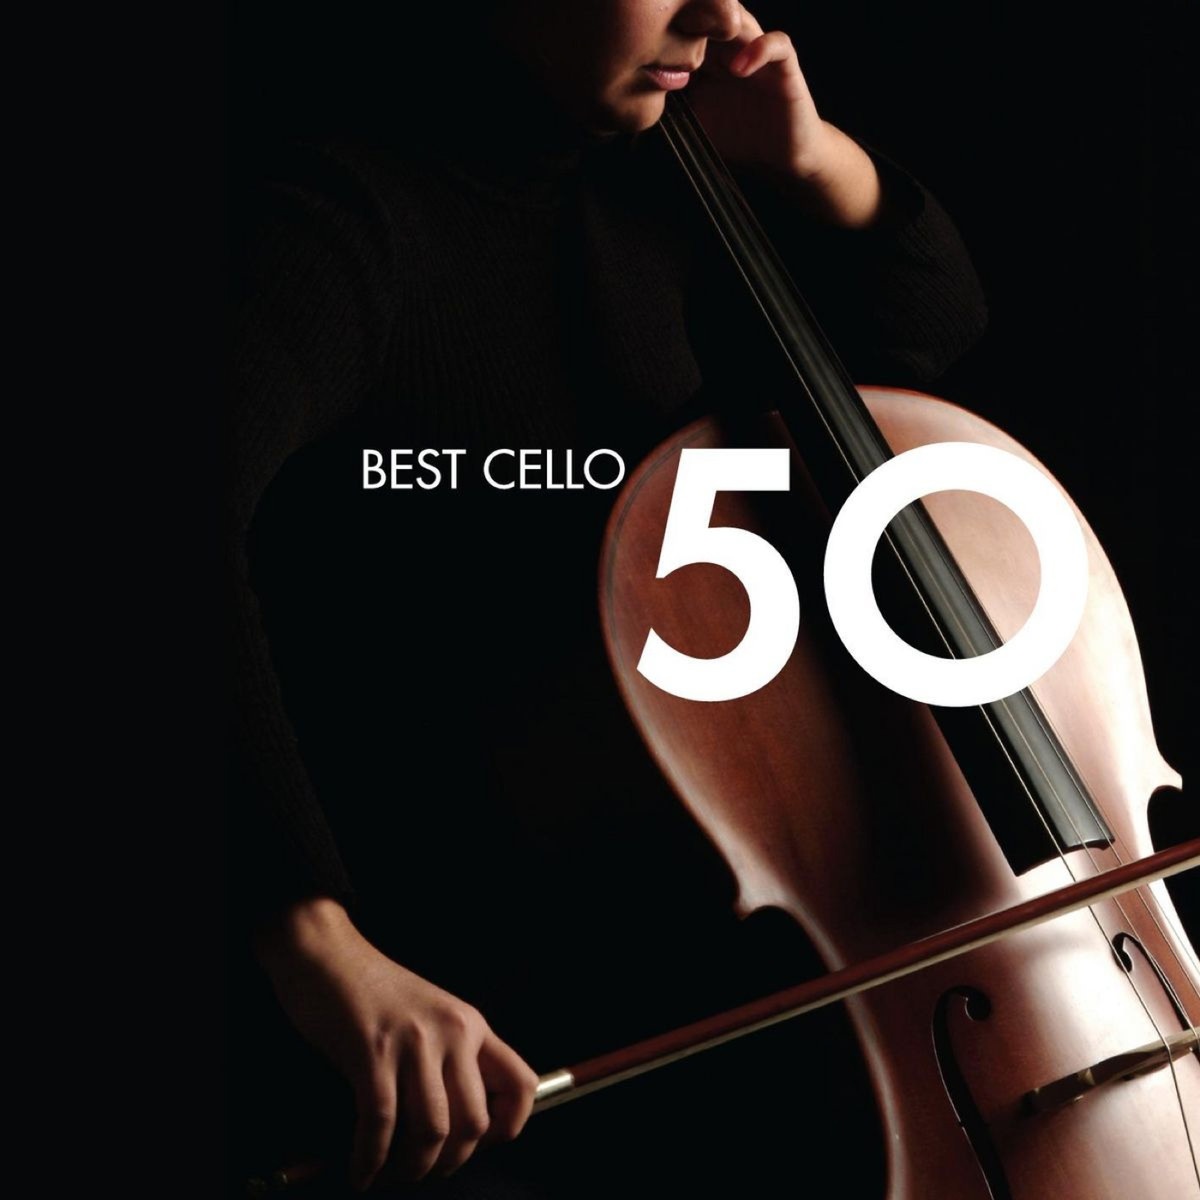 Concerto in B flat major for Cello and Orchestra G482: I.       Allegro moderato